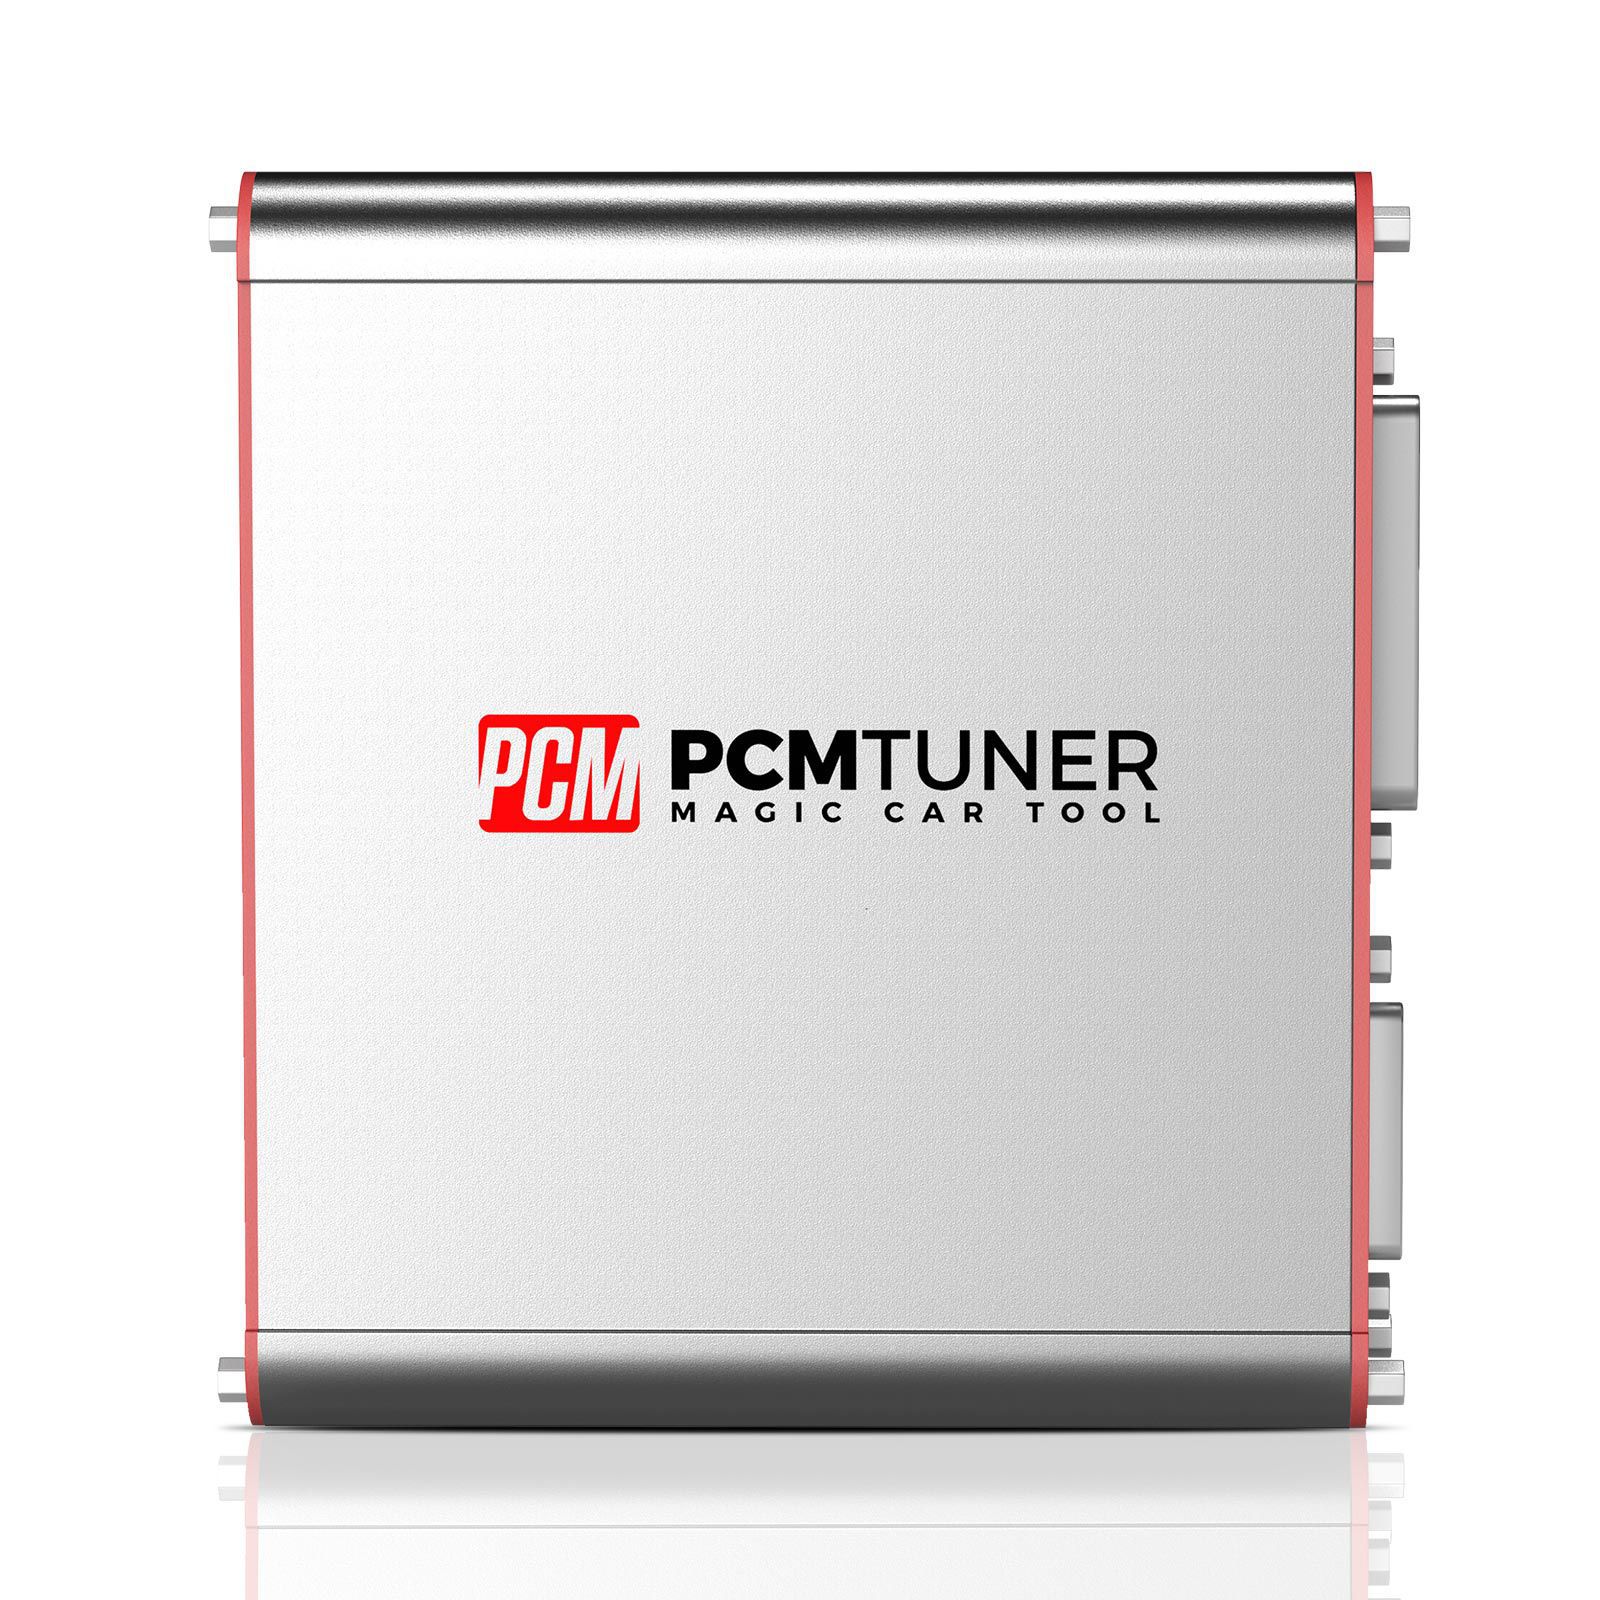 PCMtuner ECU Programmierer Plus Fetrotech Tool ECU Programmierer Silber Farbe Unterstützt MG1 MD1 EDC16 MED9.1 Steuergeräte